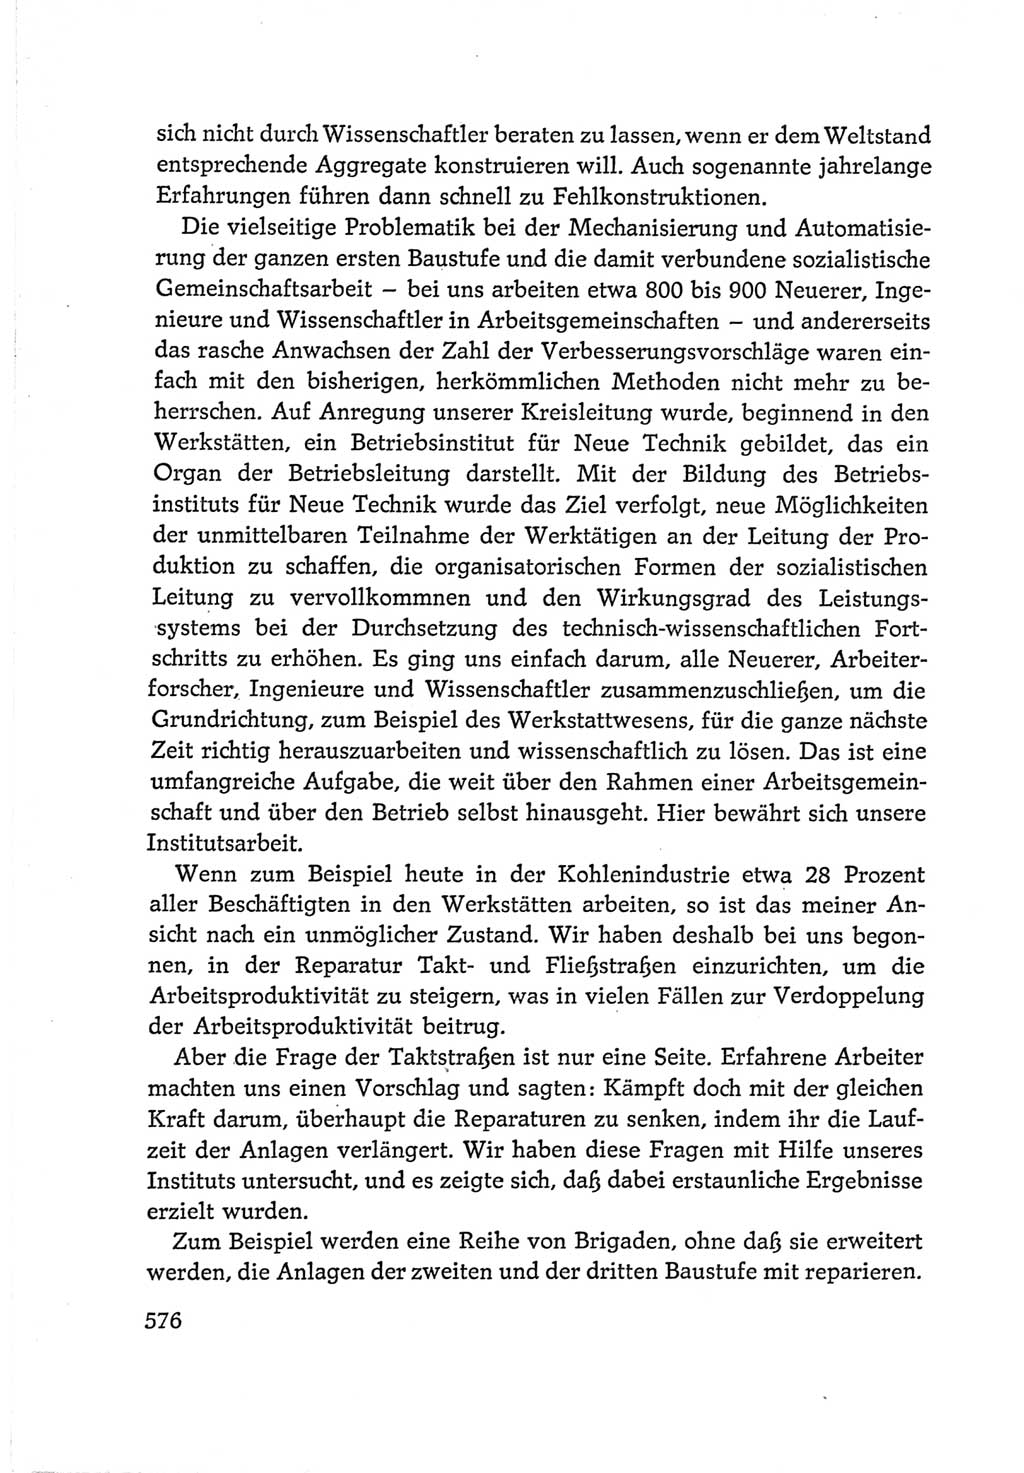 Protokoll der Verhandlungen des Ⅵ. Parteitages der Sozialistischen Einheitspartei Deutschlands (SED) [Deutsche Demokratische Republik (DDR)] 1963, Band Ⅰ, Seite 576 (Prot. Verh. Ⅵ. PT SED DDR 1963, Bd. Ⅰ, S. 576)